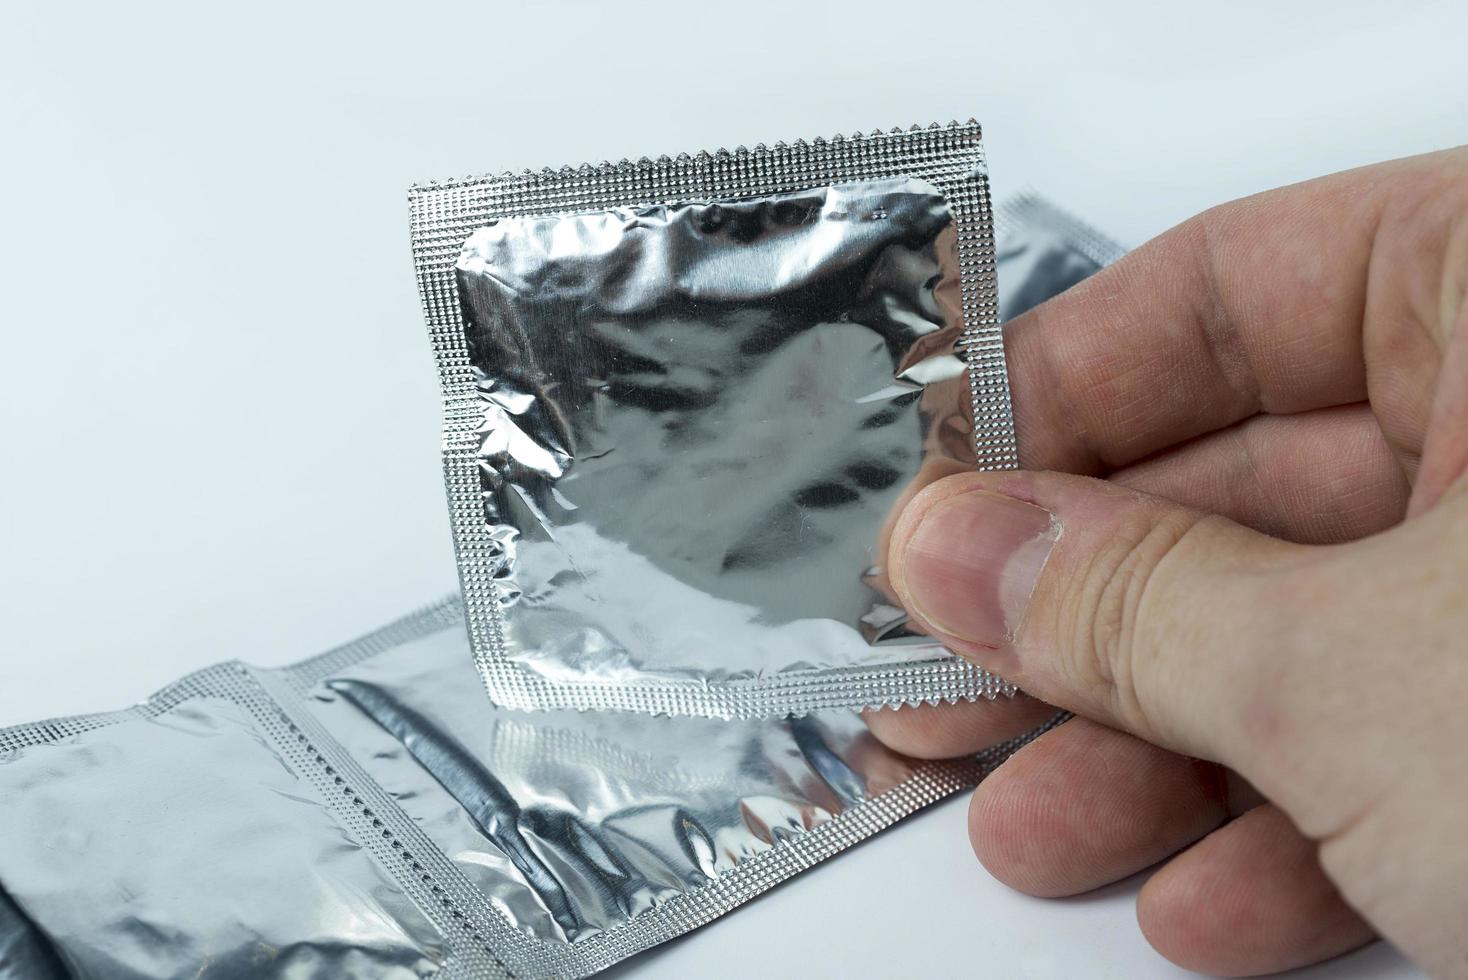 hand met een condoom, op een witte achtergrond. foto